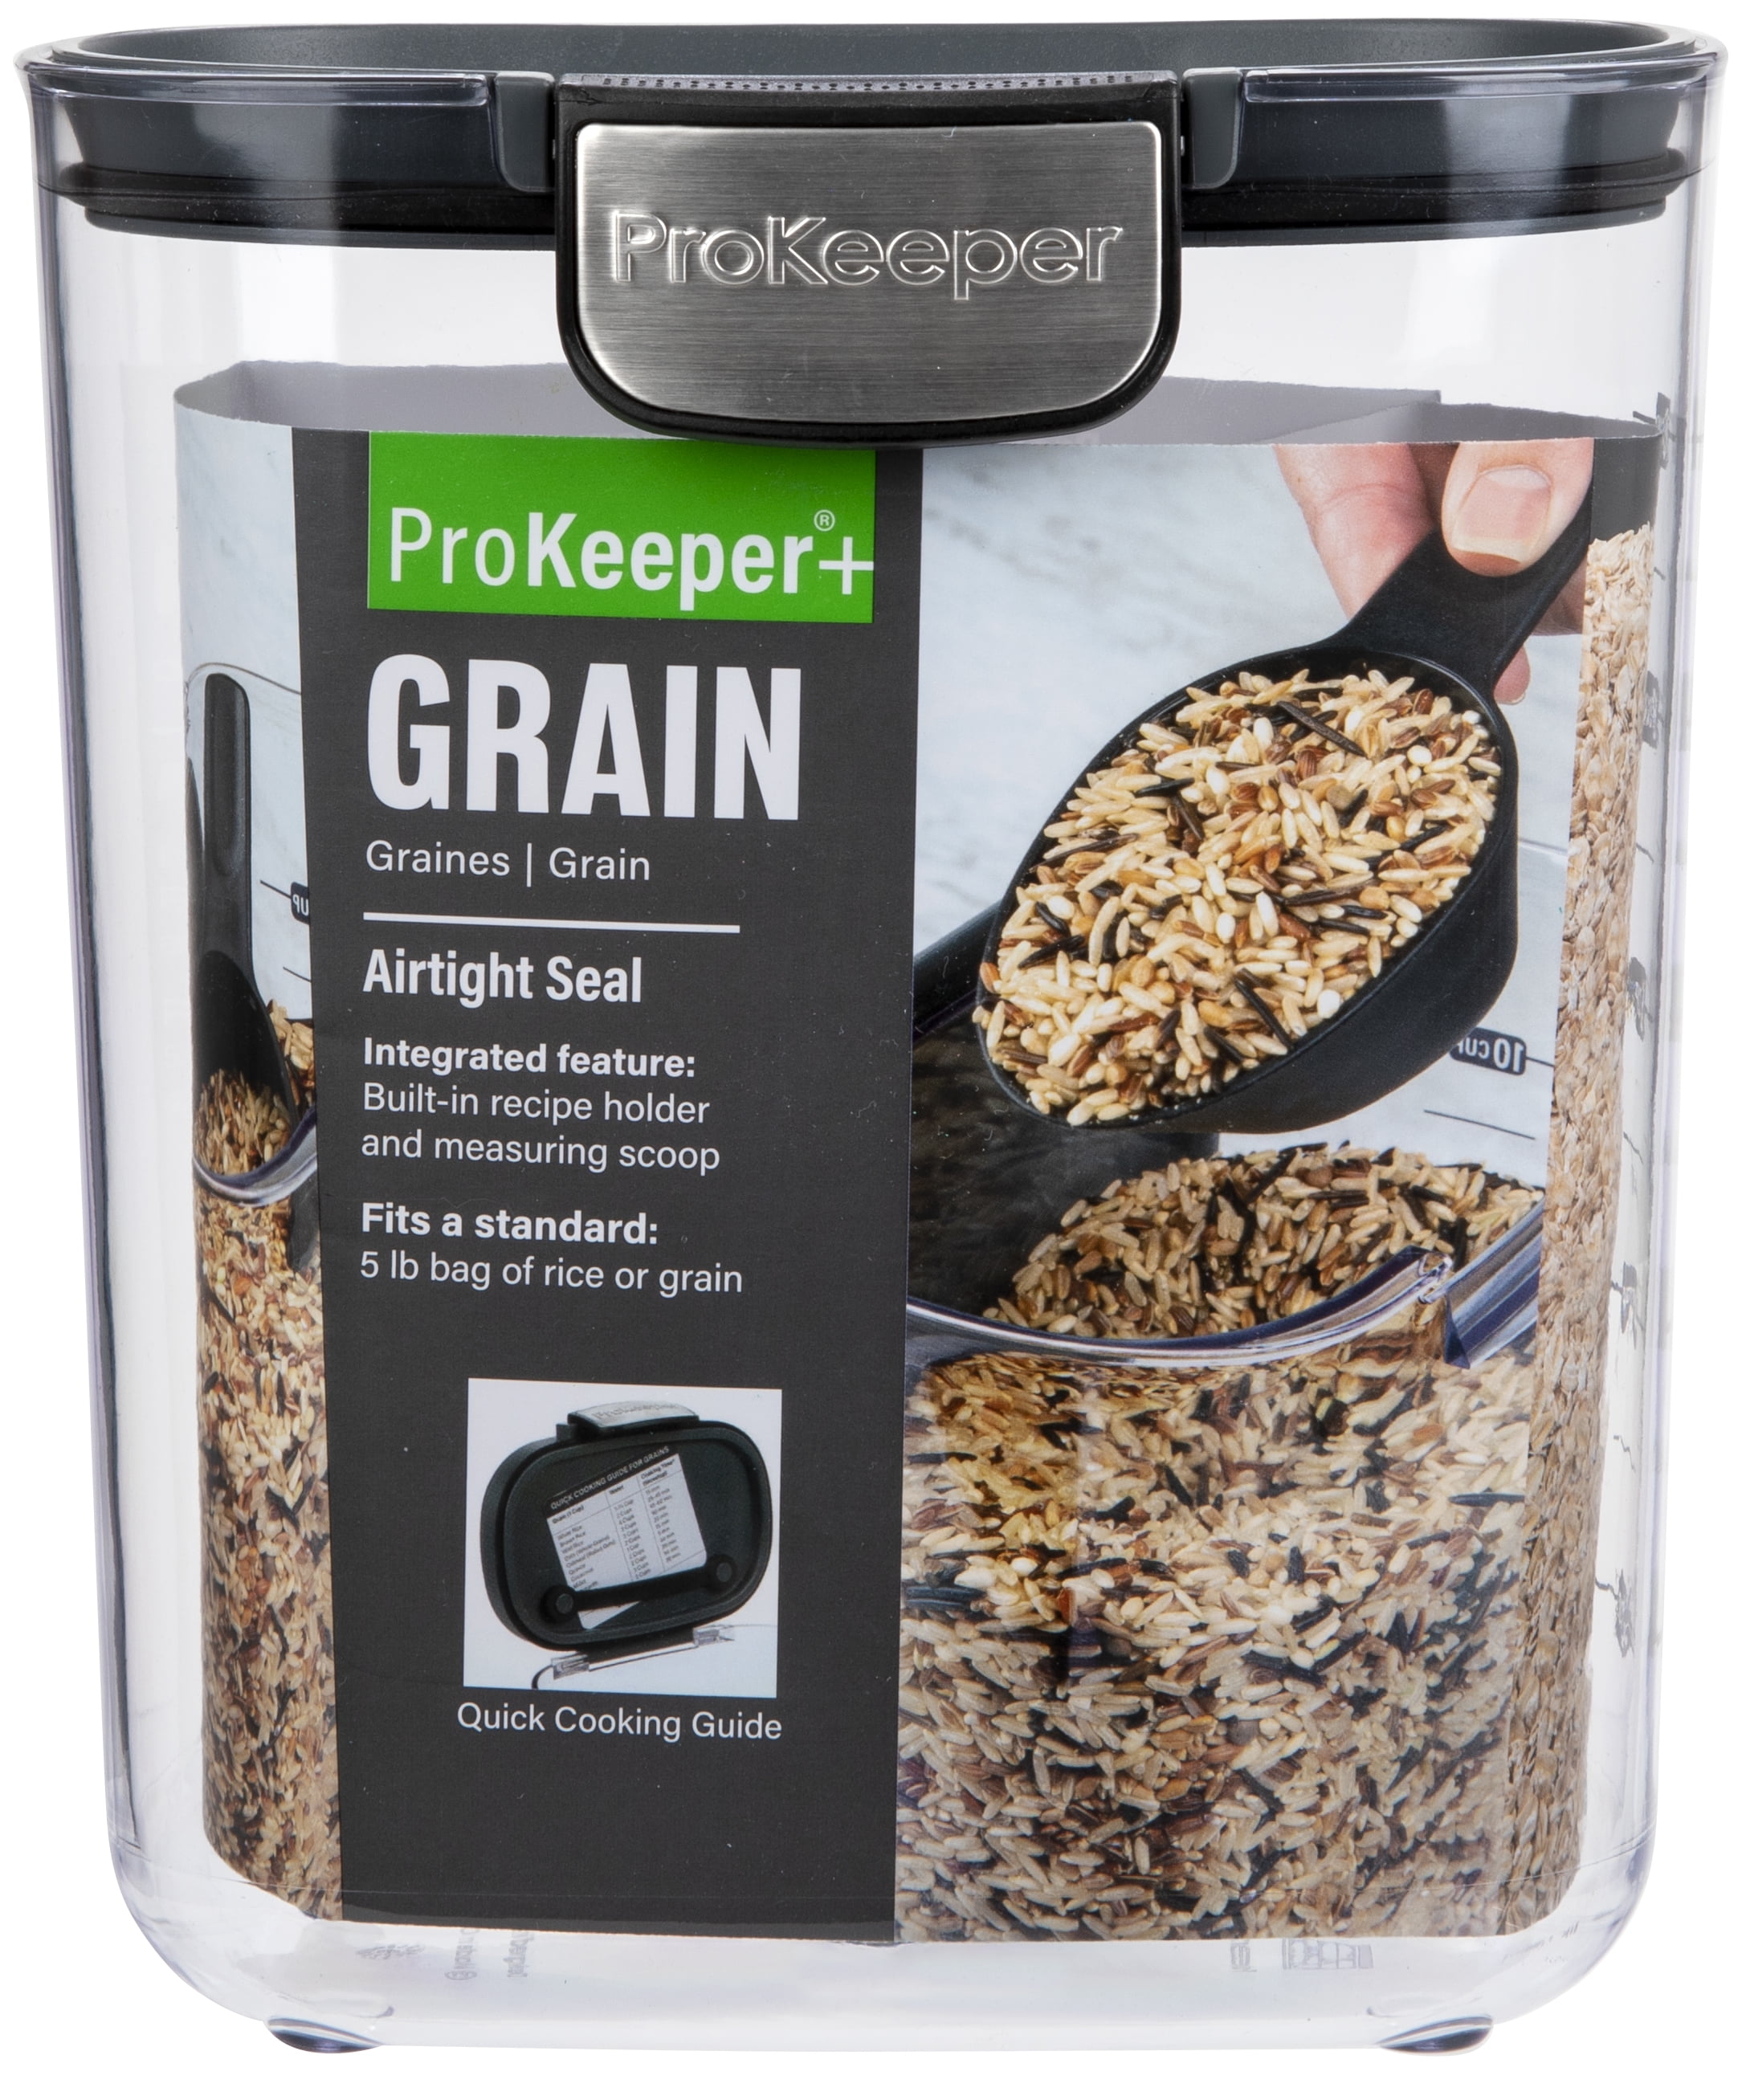 Prepworks Grain Prokeeper